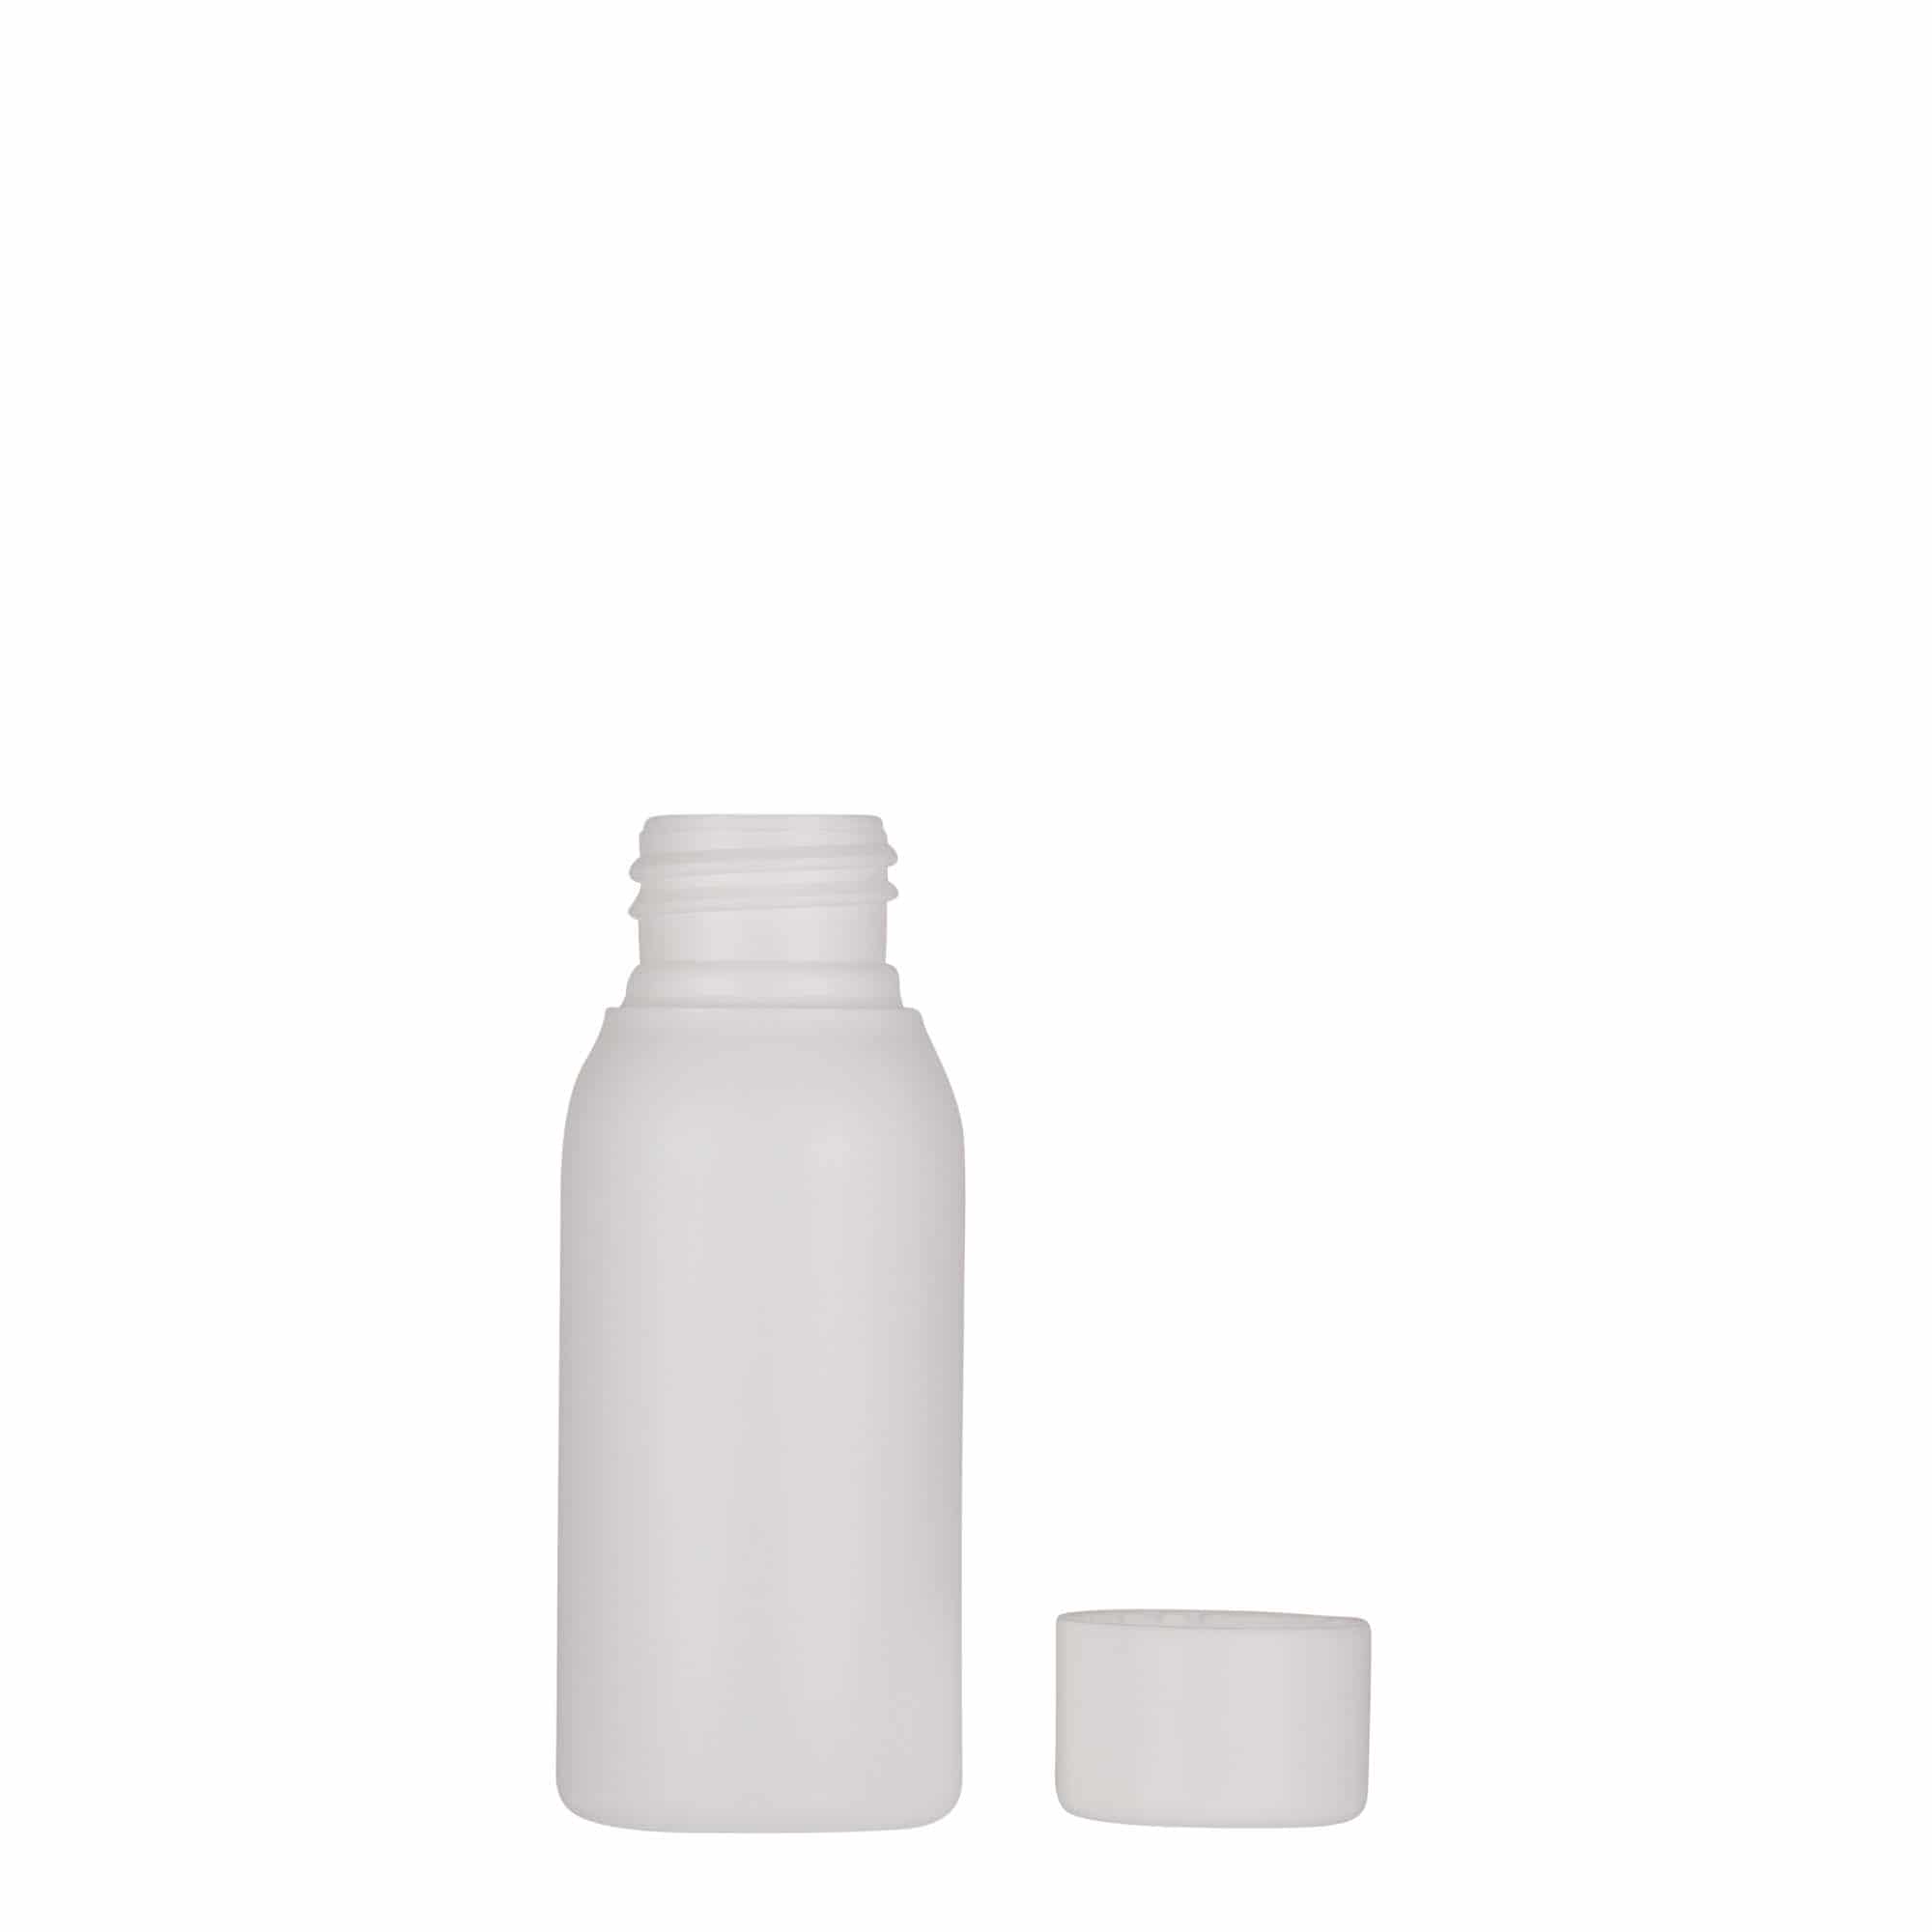 50 ml plastic bottle 'Tuffy', HDPE, white, closure: GPI 24/410